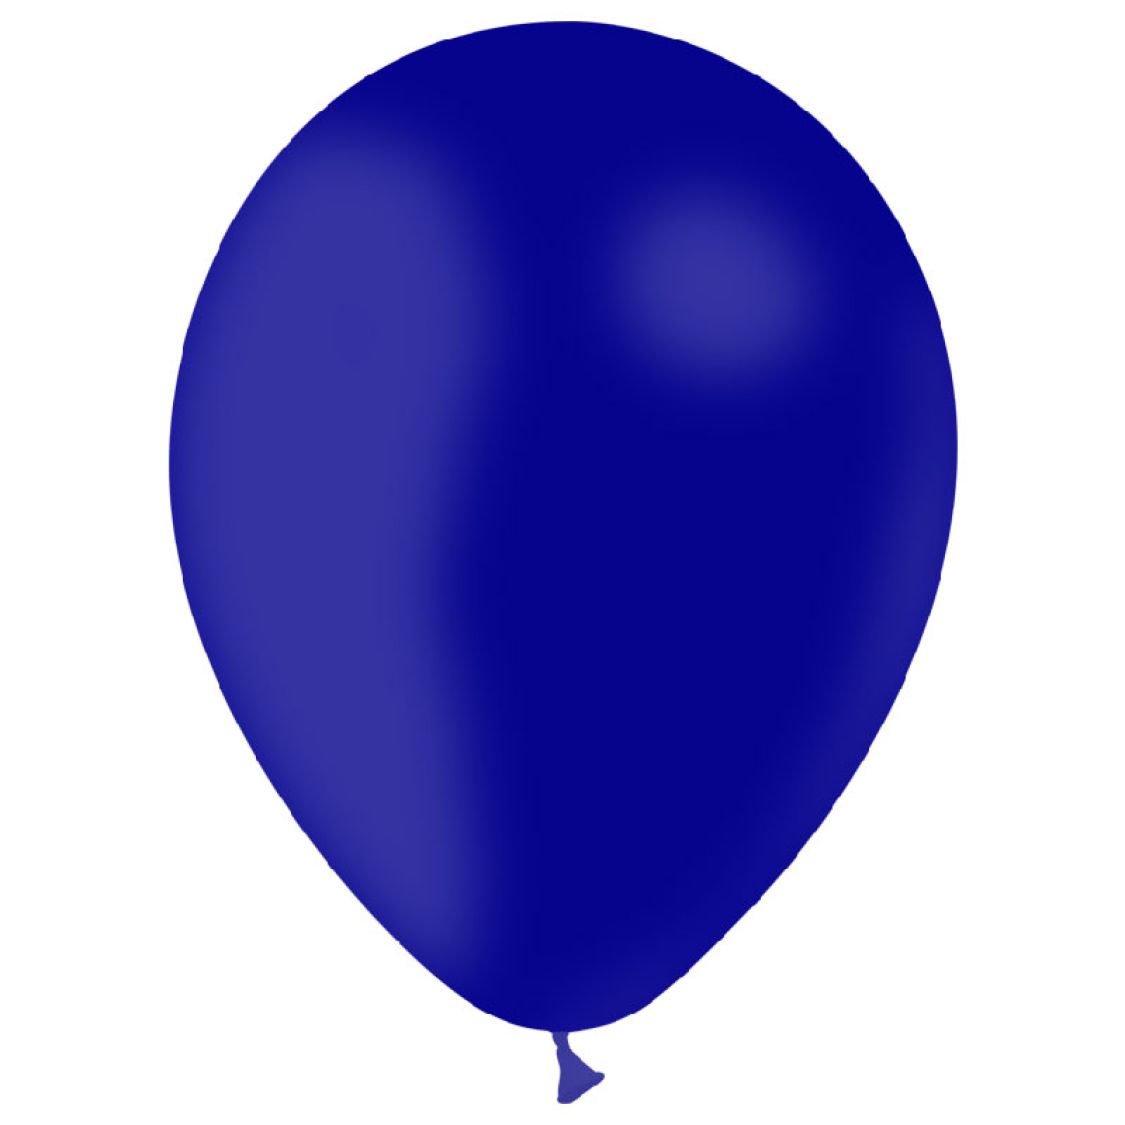 Ballon bleu marine